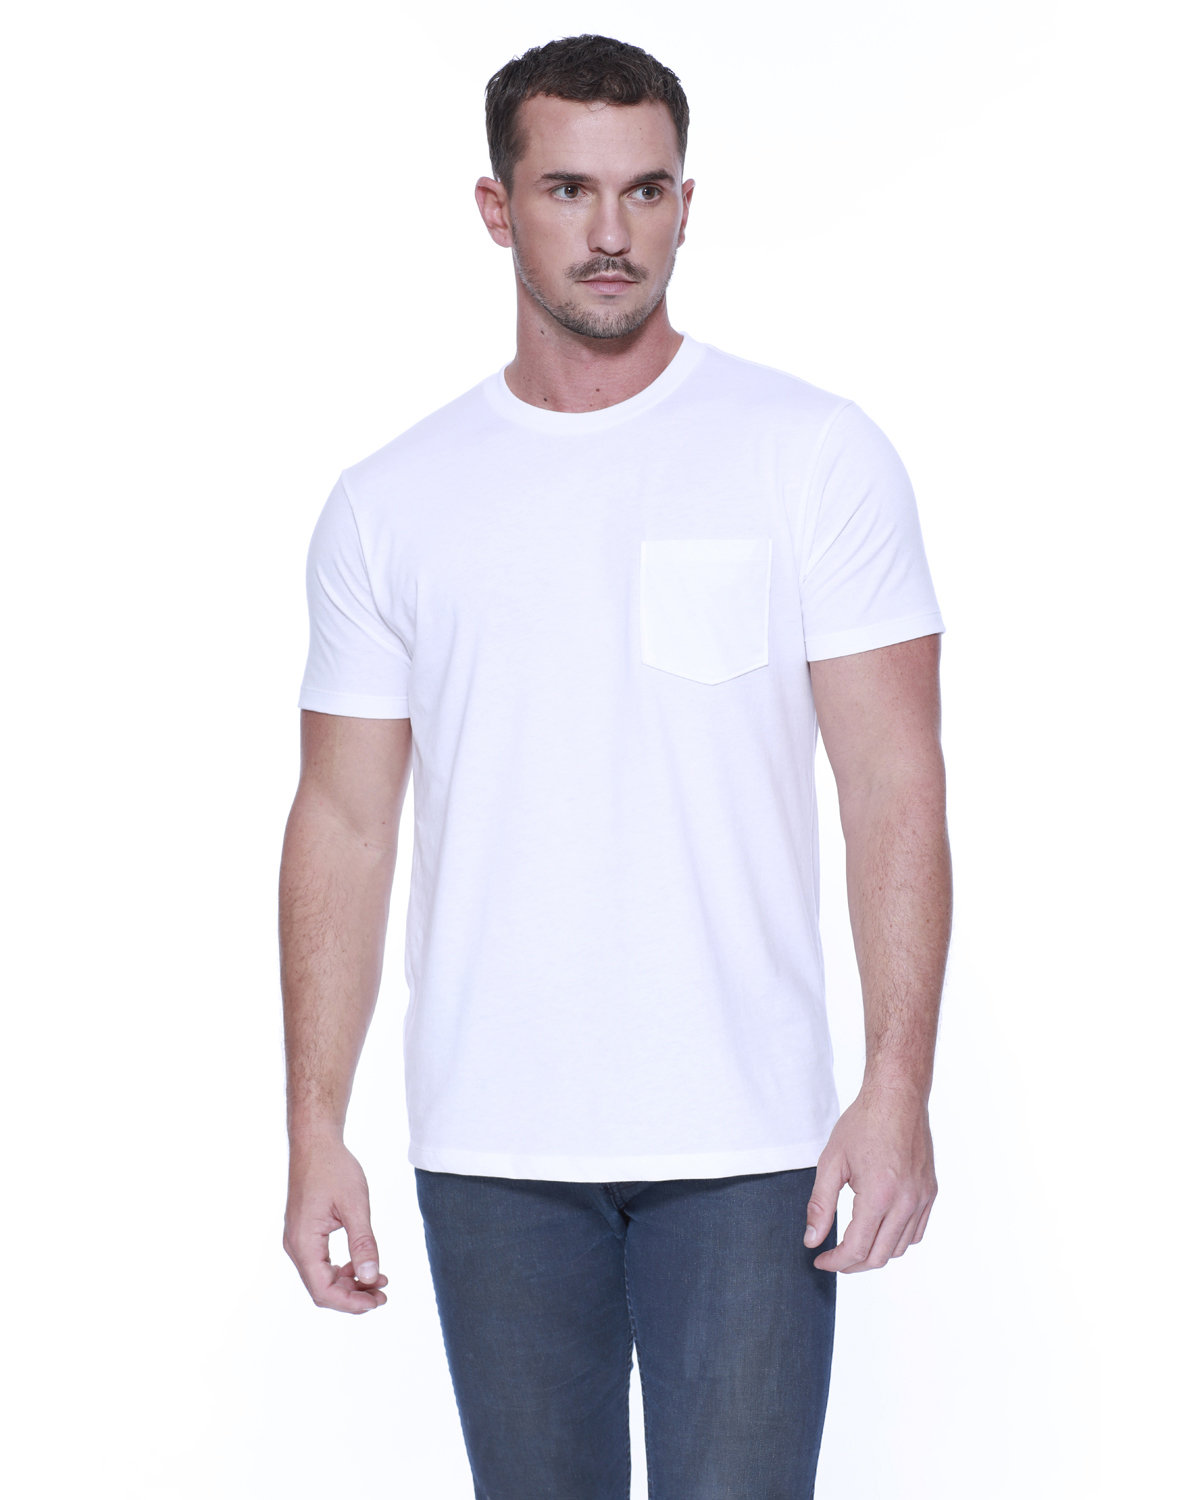 StarTee Men's CVC Pocket T-Shirt WHITE 